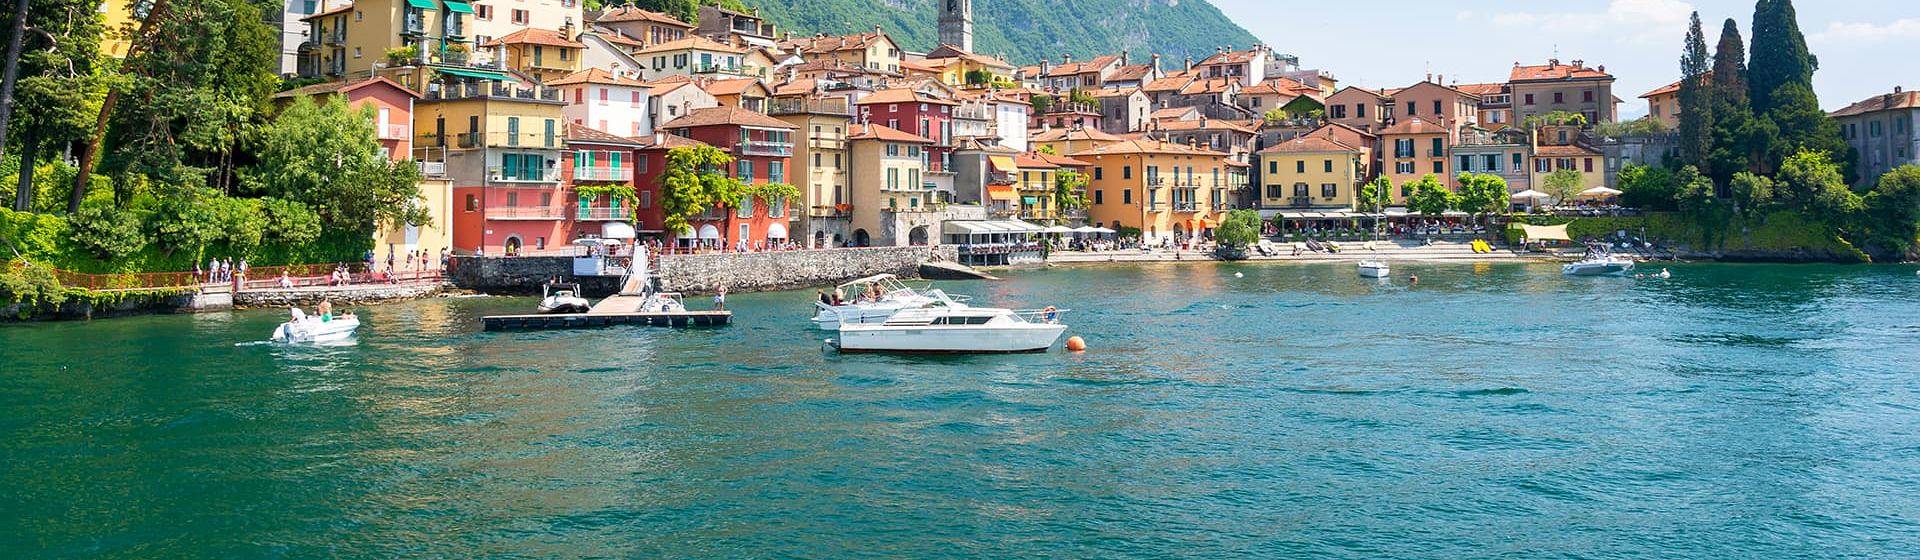 Holidays to Lake Como Image